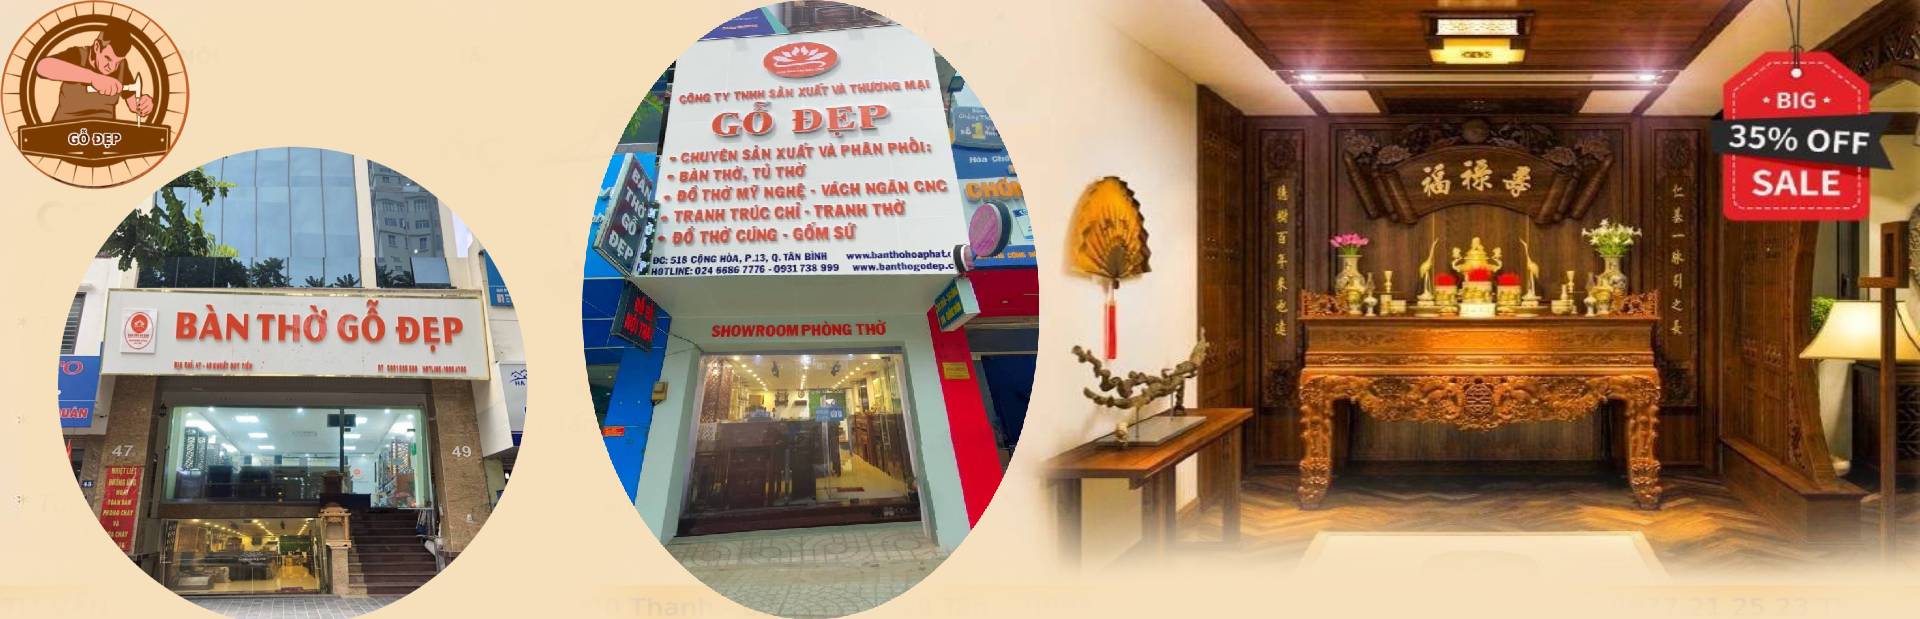 Địa chỉ cửa hàng tại Hà Nội và Hồ Chí Minh 